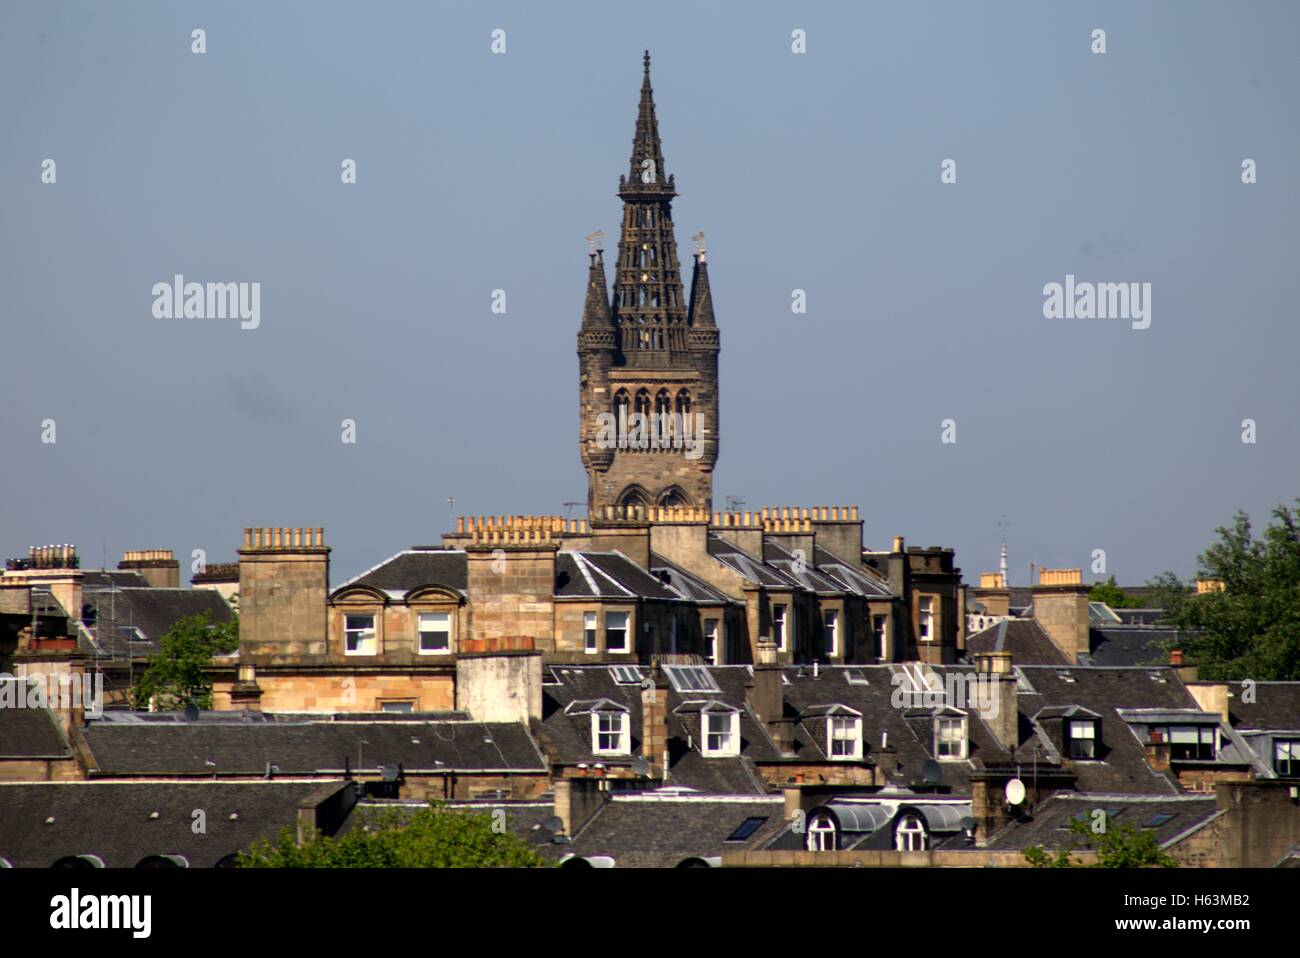 Tour de l'horloge de l'Université de Glasgow lording il sur les toits et les pots de cheminée de Glasgow Banque D'Images